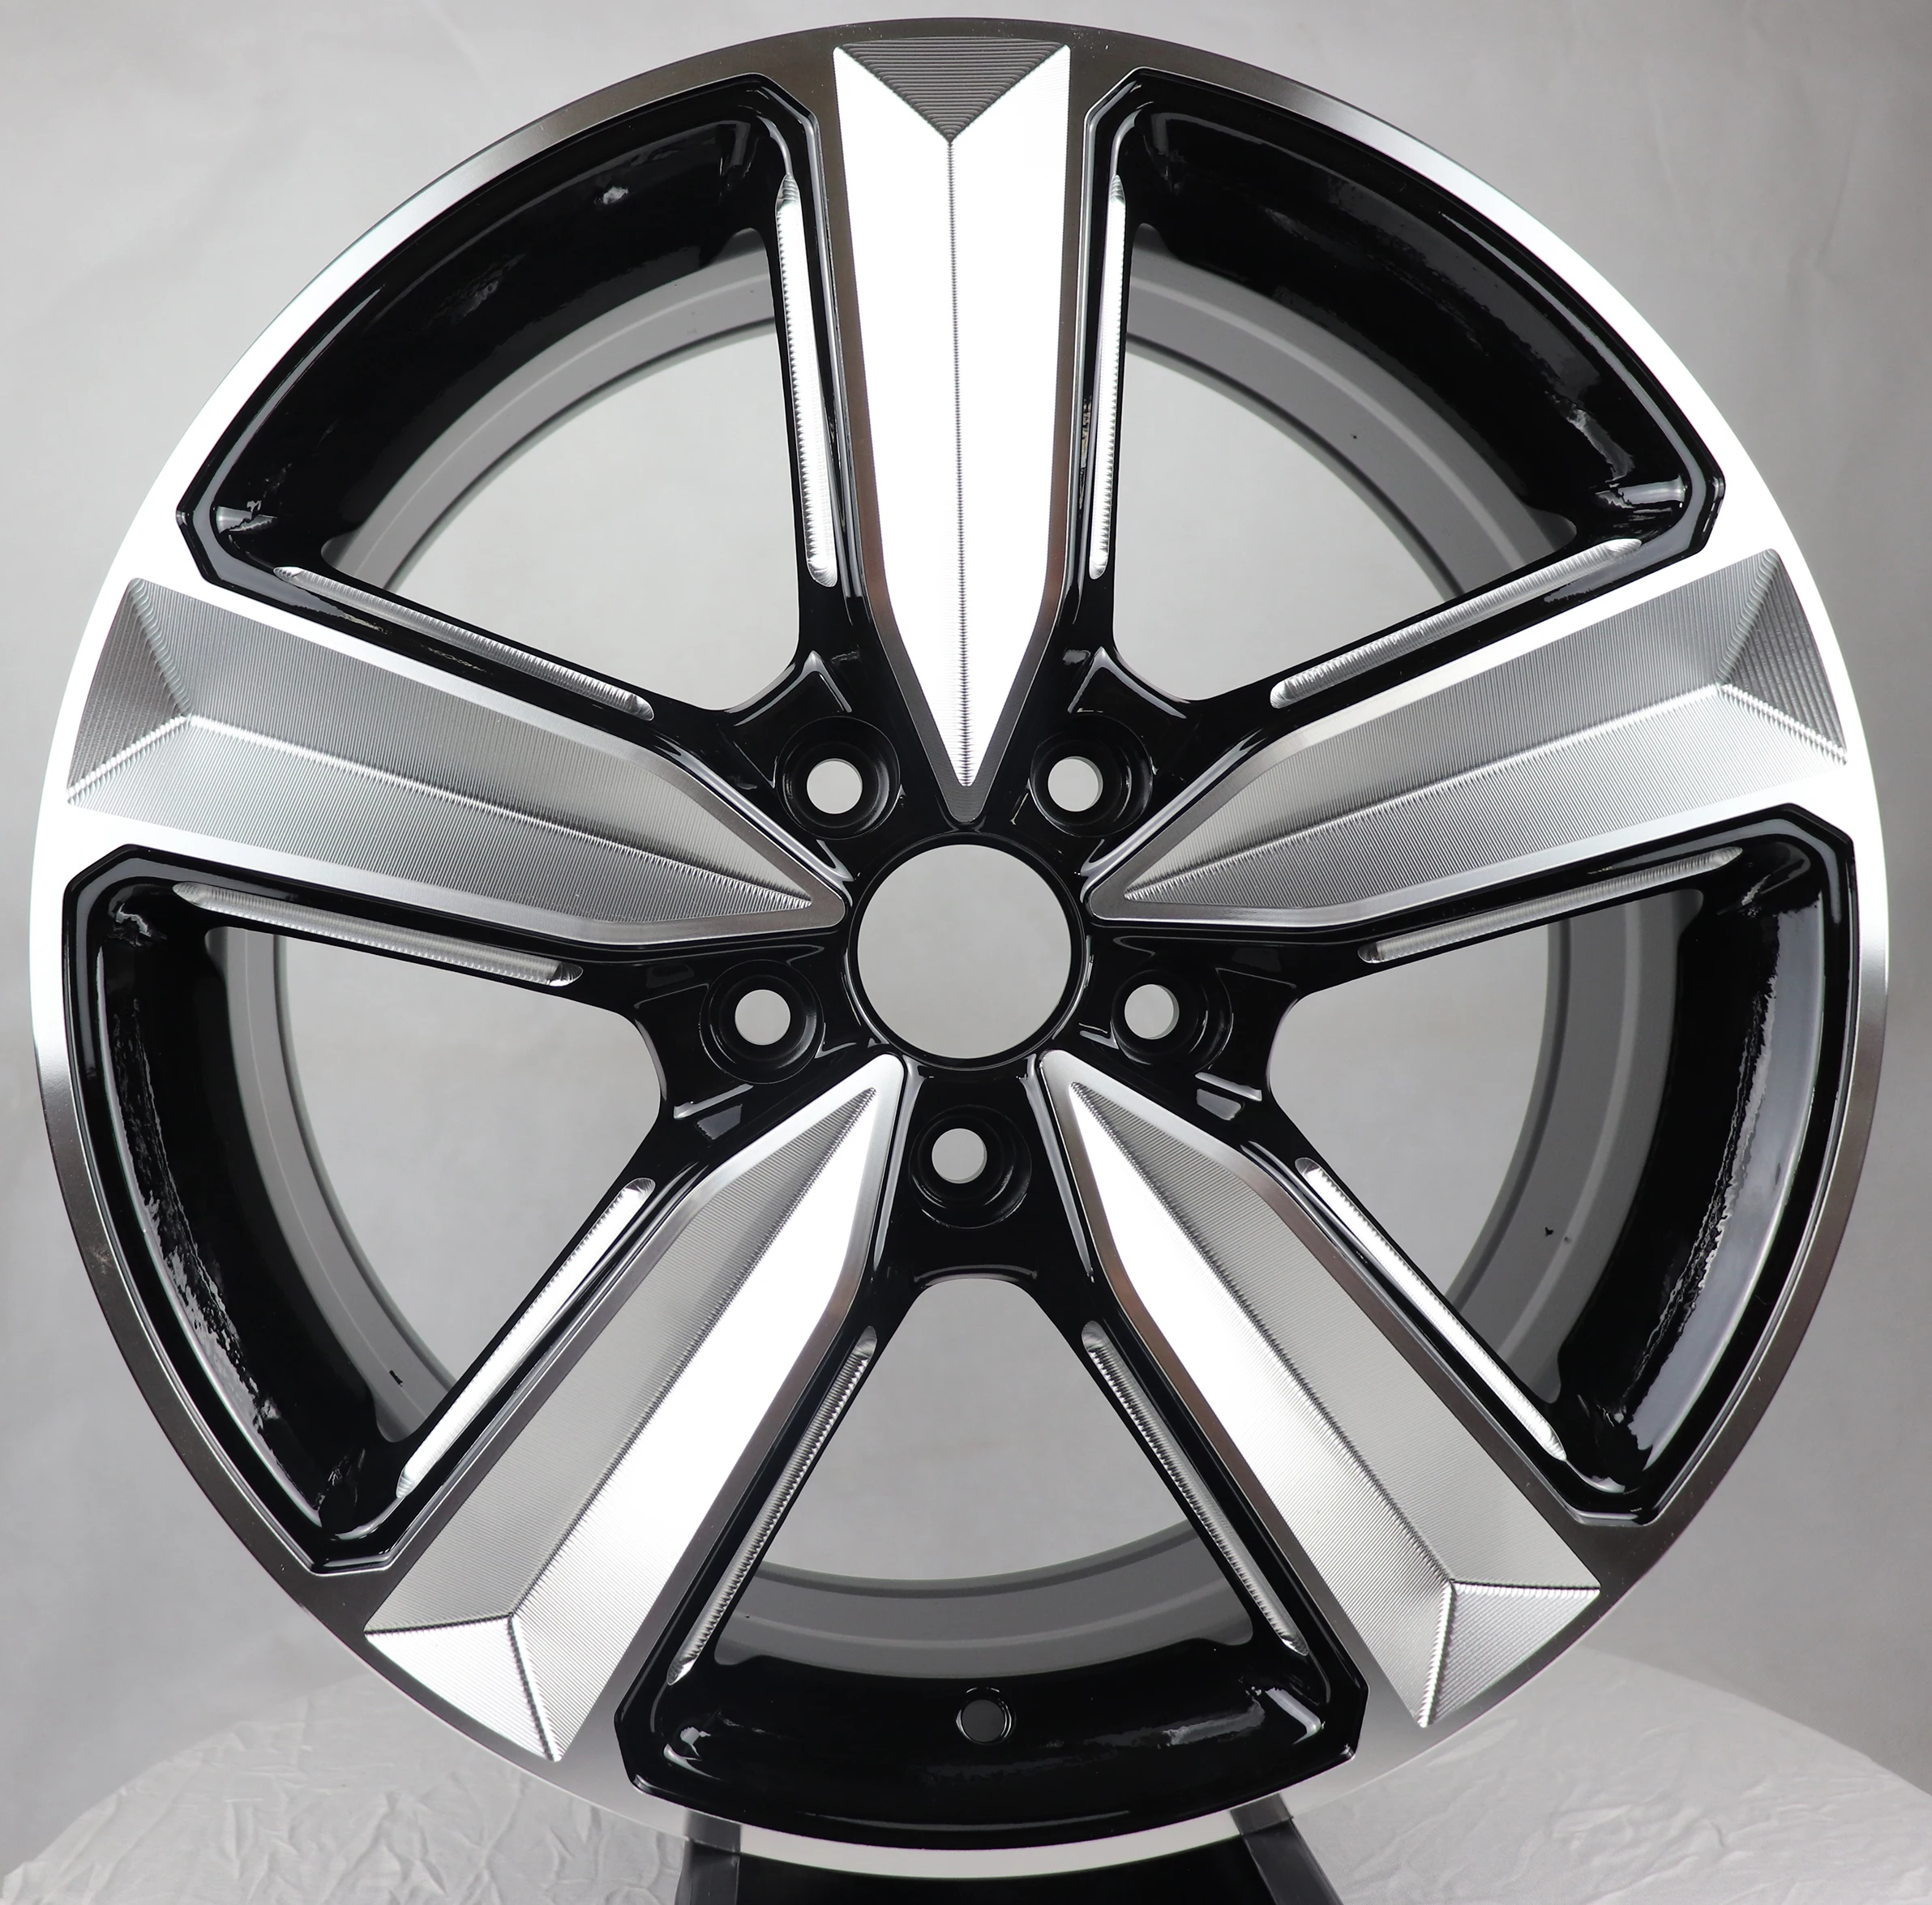 

REW017-7 Milling spoke concave wheel r17 5x120 wholesale rims 17 inch 5 holes car alloy wheels